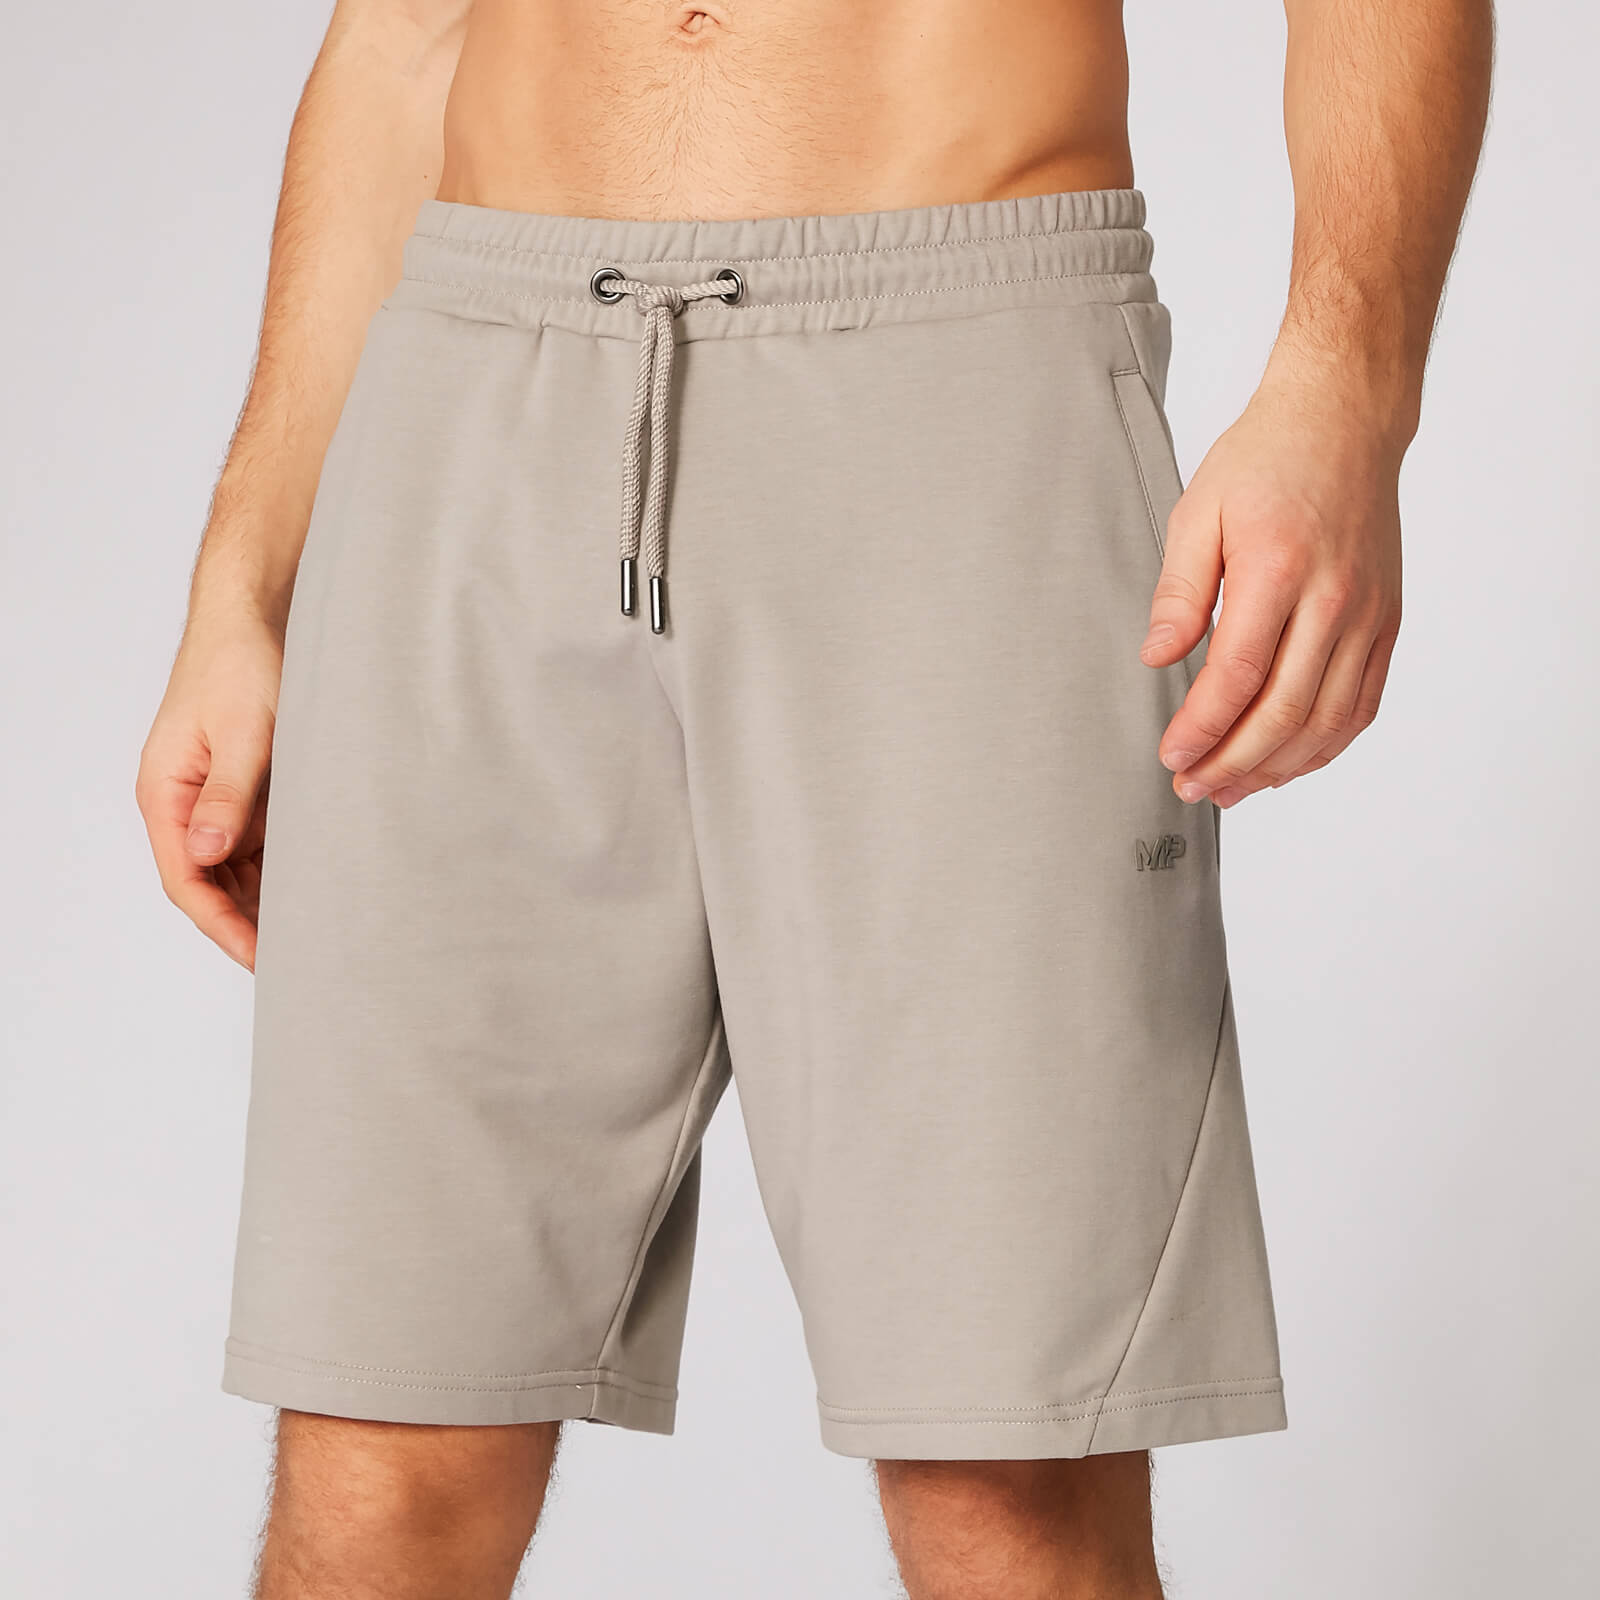 Form Sweat kratke hlače - Bež - XS